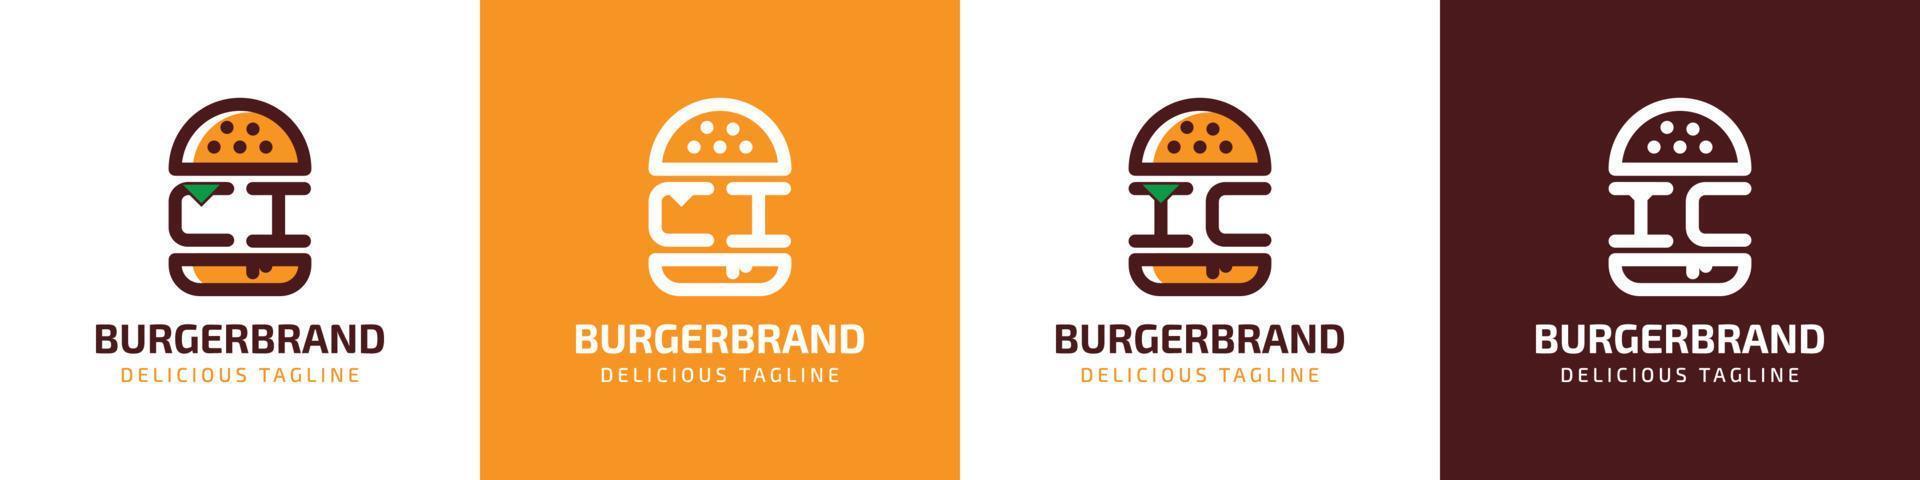 letra ci y ic hamburguesa logo, adecuado para ninguna negocio relacionado a hamburguesa con ci o ic iniciales. vector